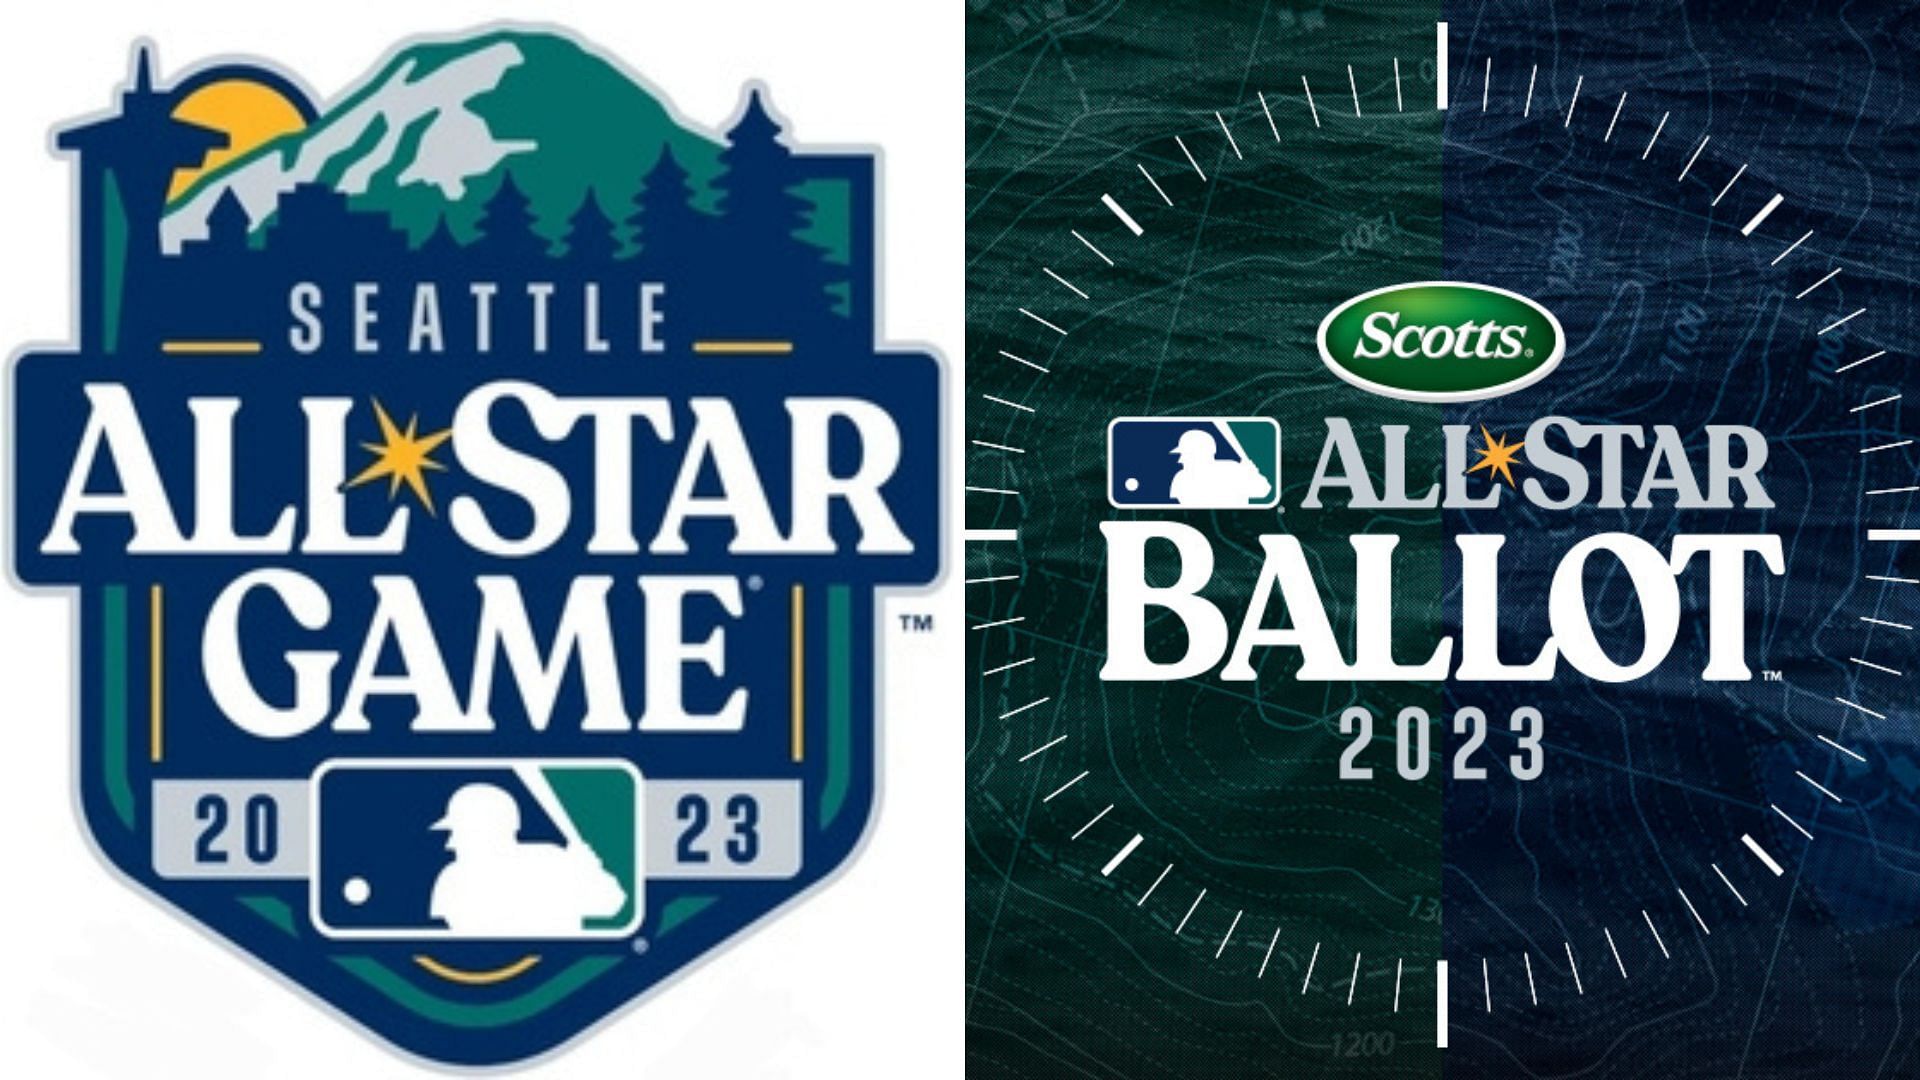 First 2023 MLB AllStar Ballot update